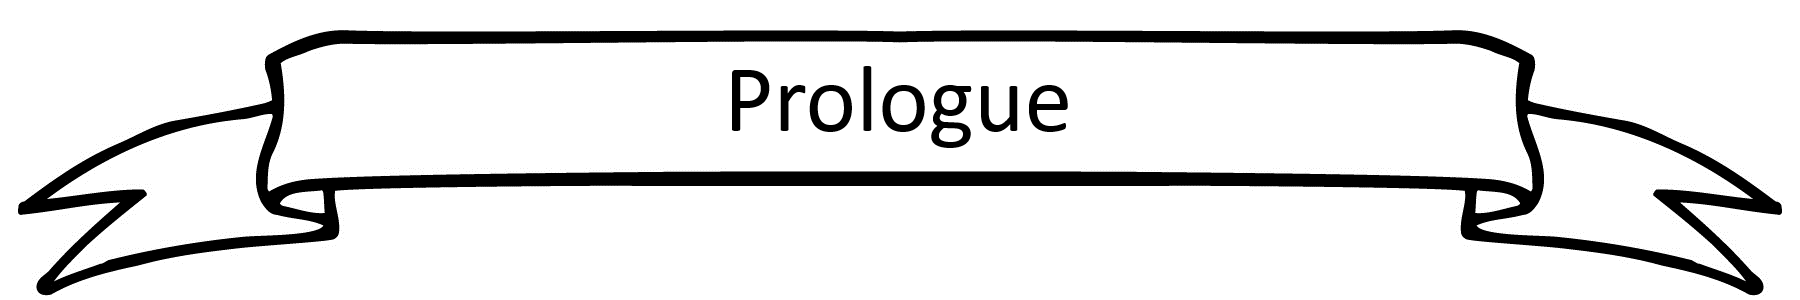 prologue heading